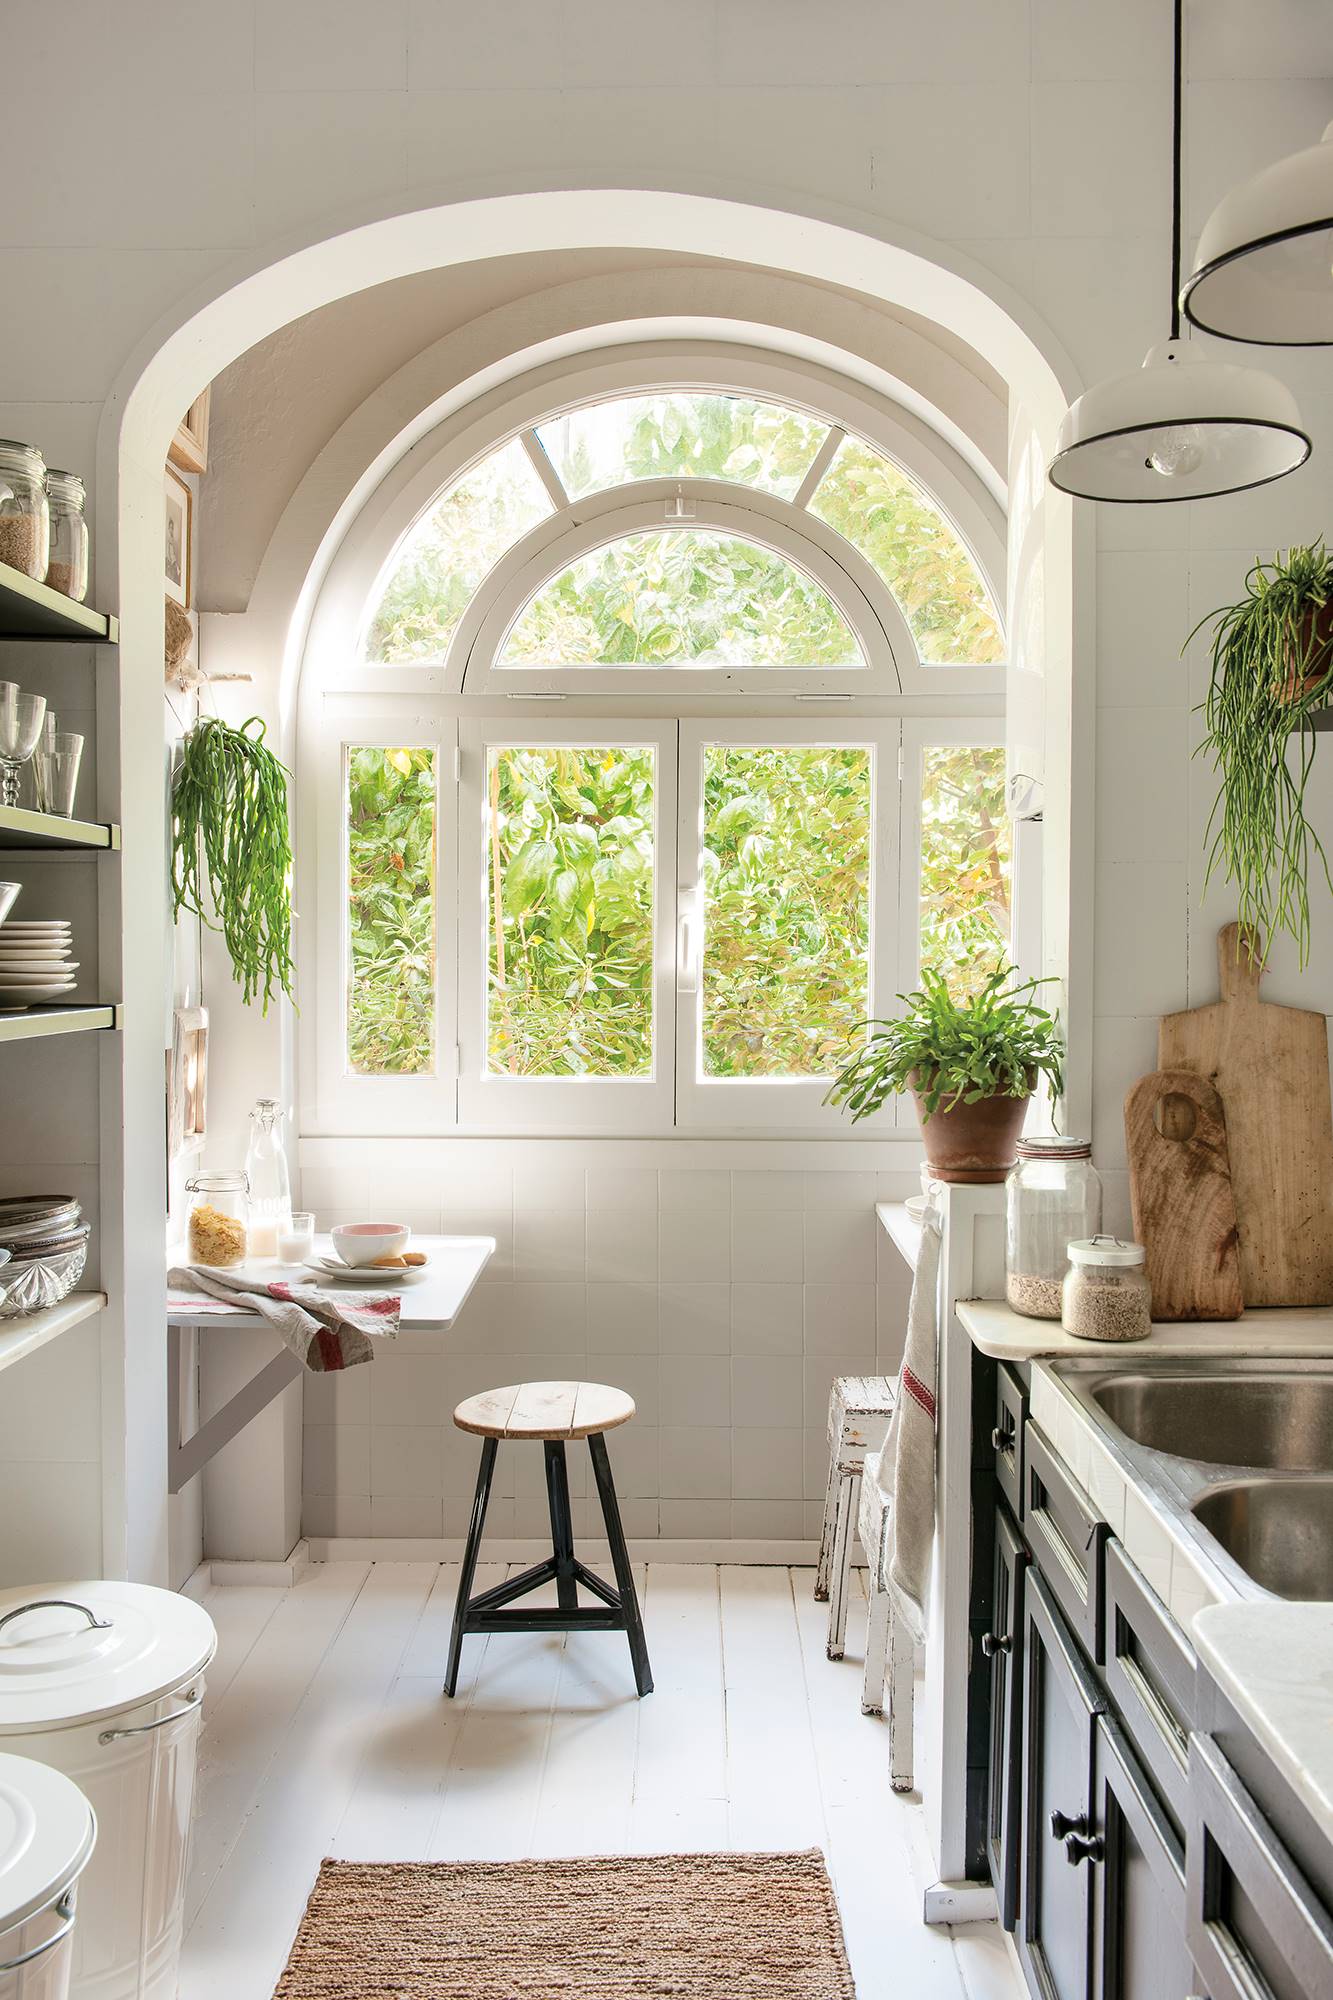 Cocina blanca con gran ventanal en forma de arco y muebles de cocina en negro